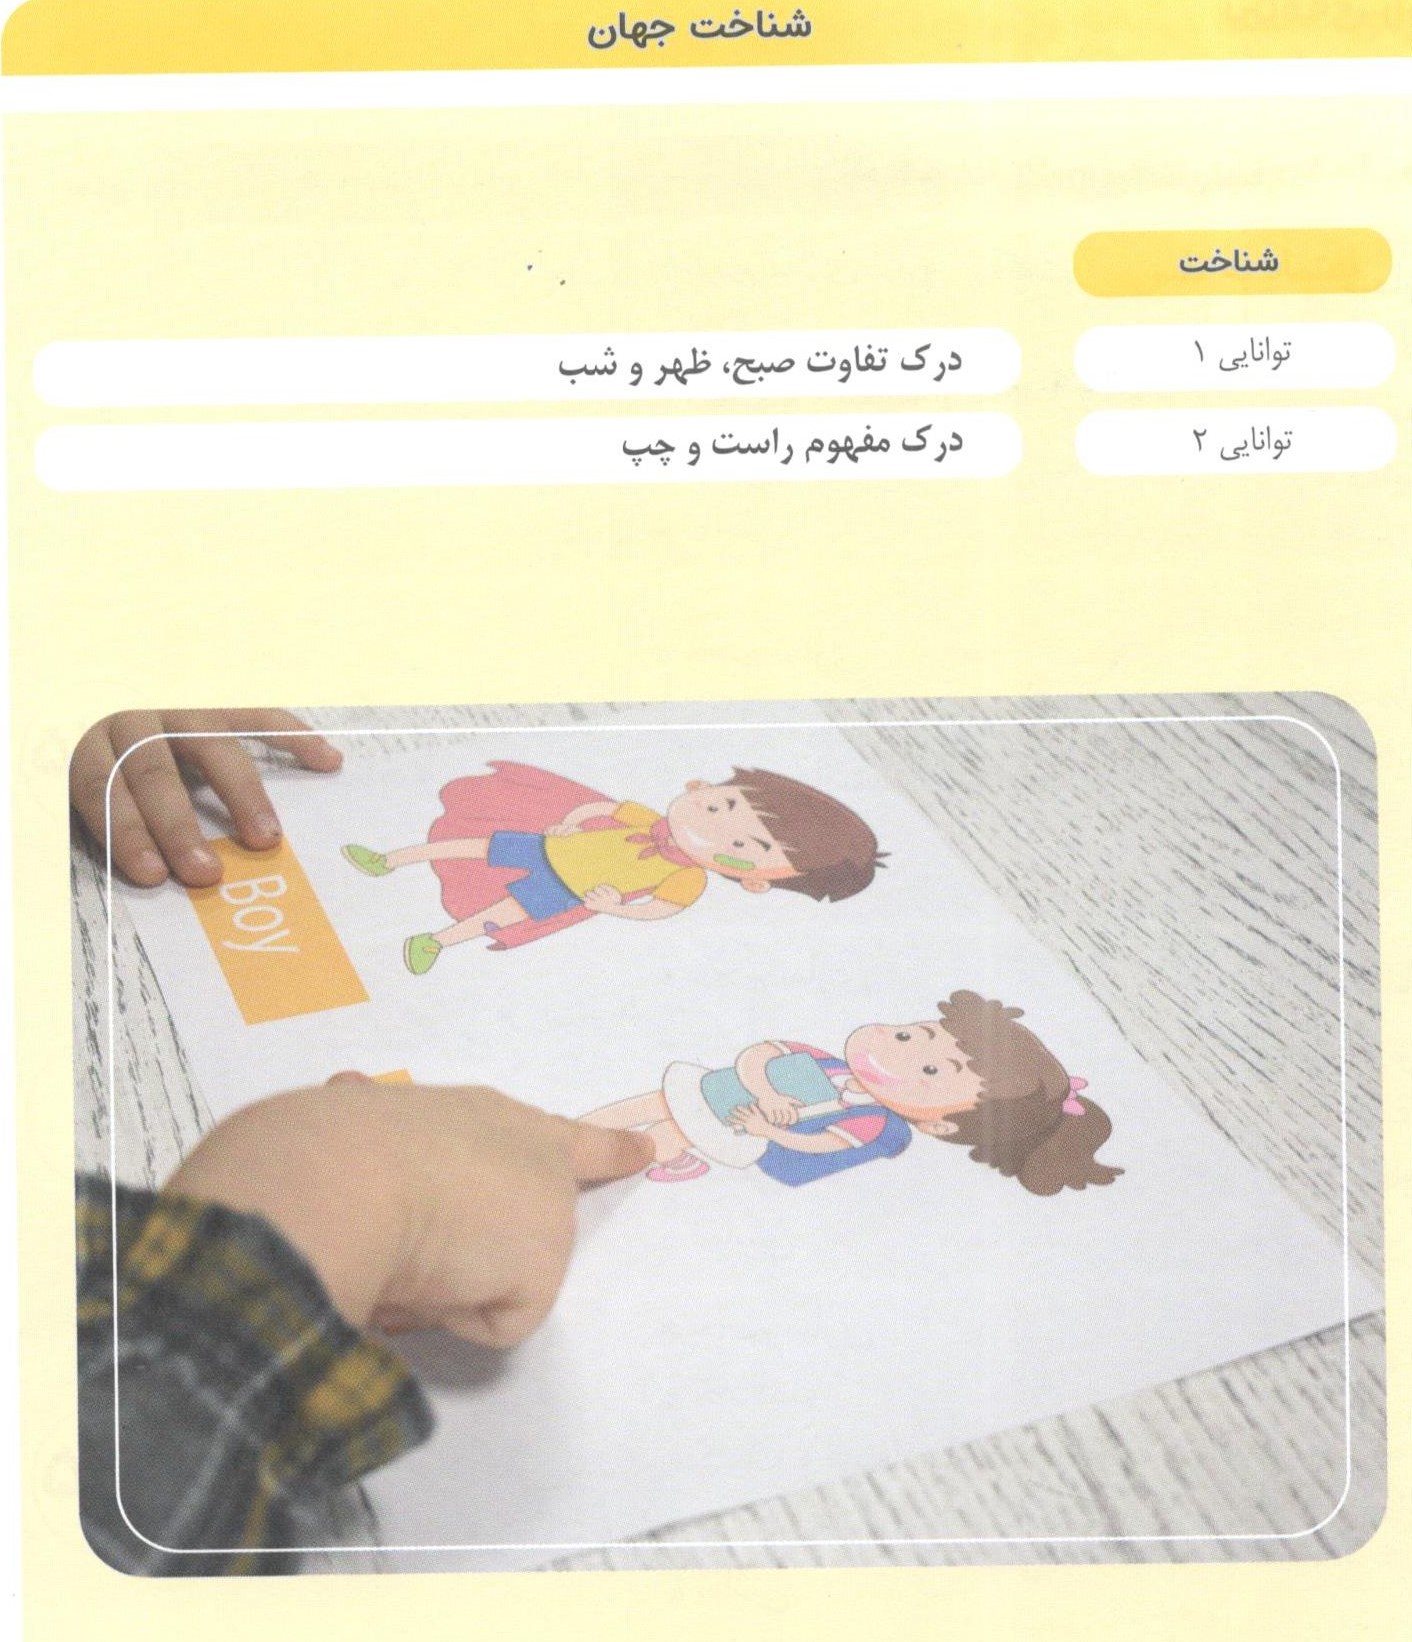 کتاب مامک شناخت جهان 6 برای کودکان 6 سال اثر پرستو قلم چی انتشارات پرستو